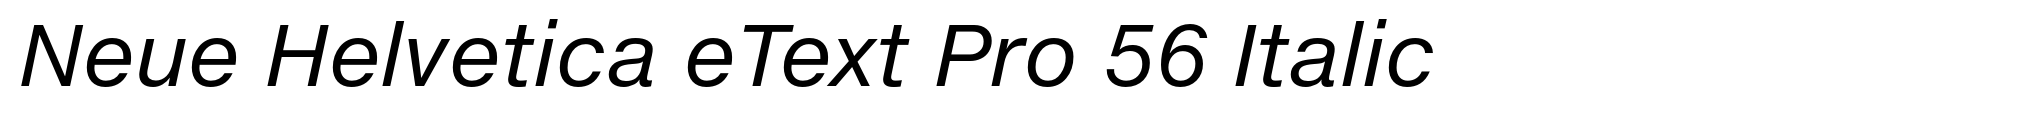 Neue Helvetica eText Pro 56 Italic image